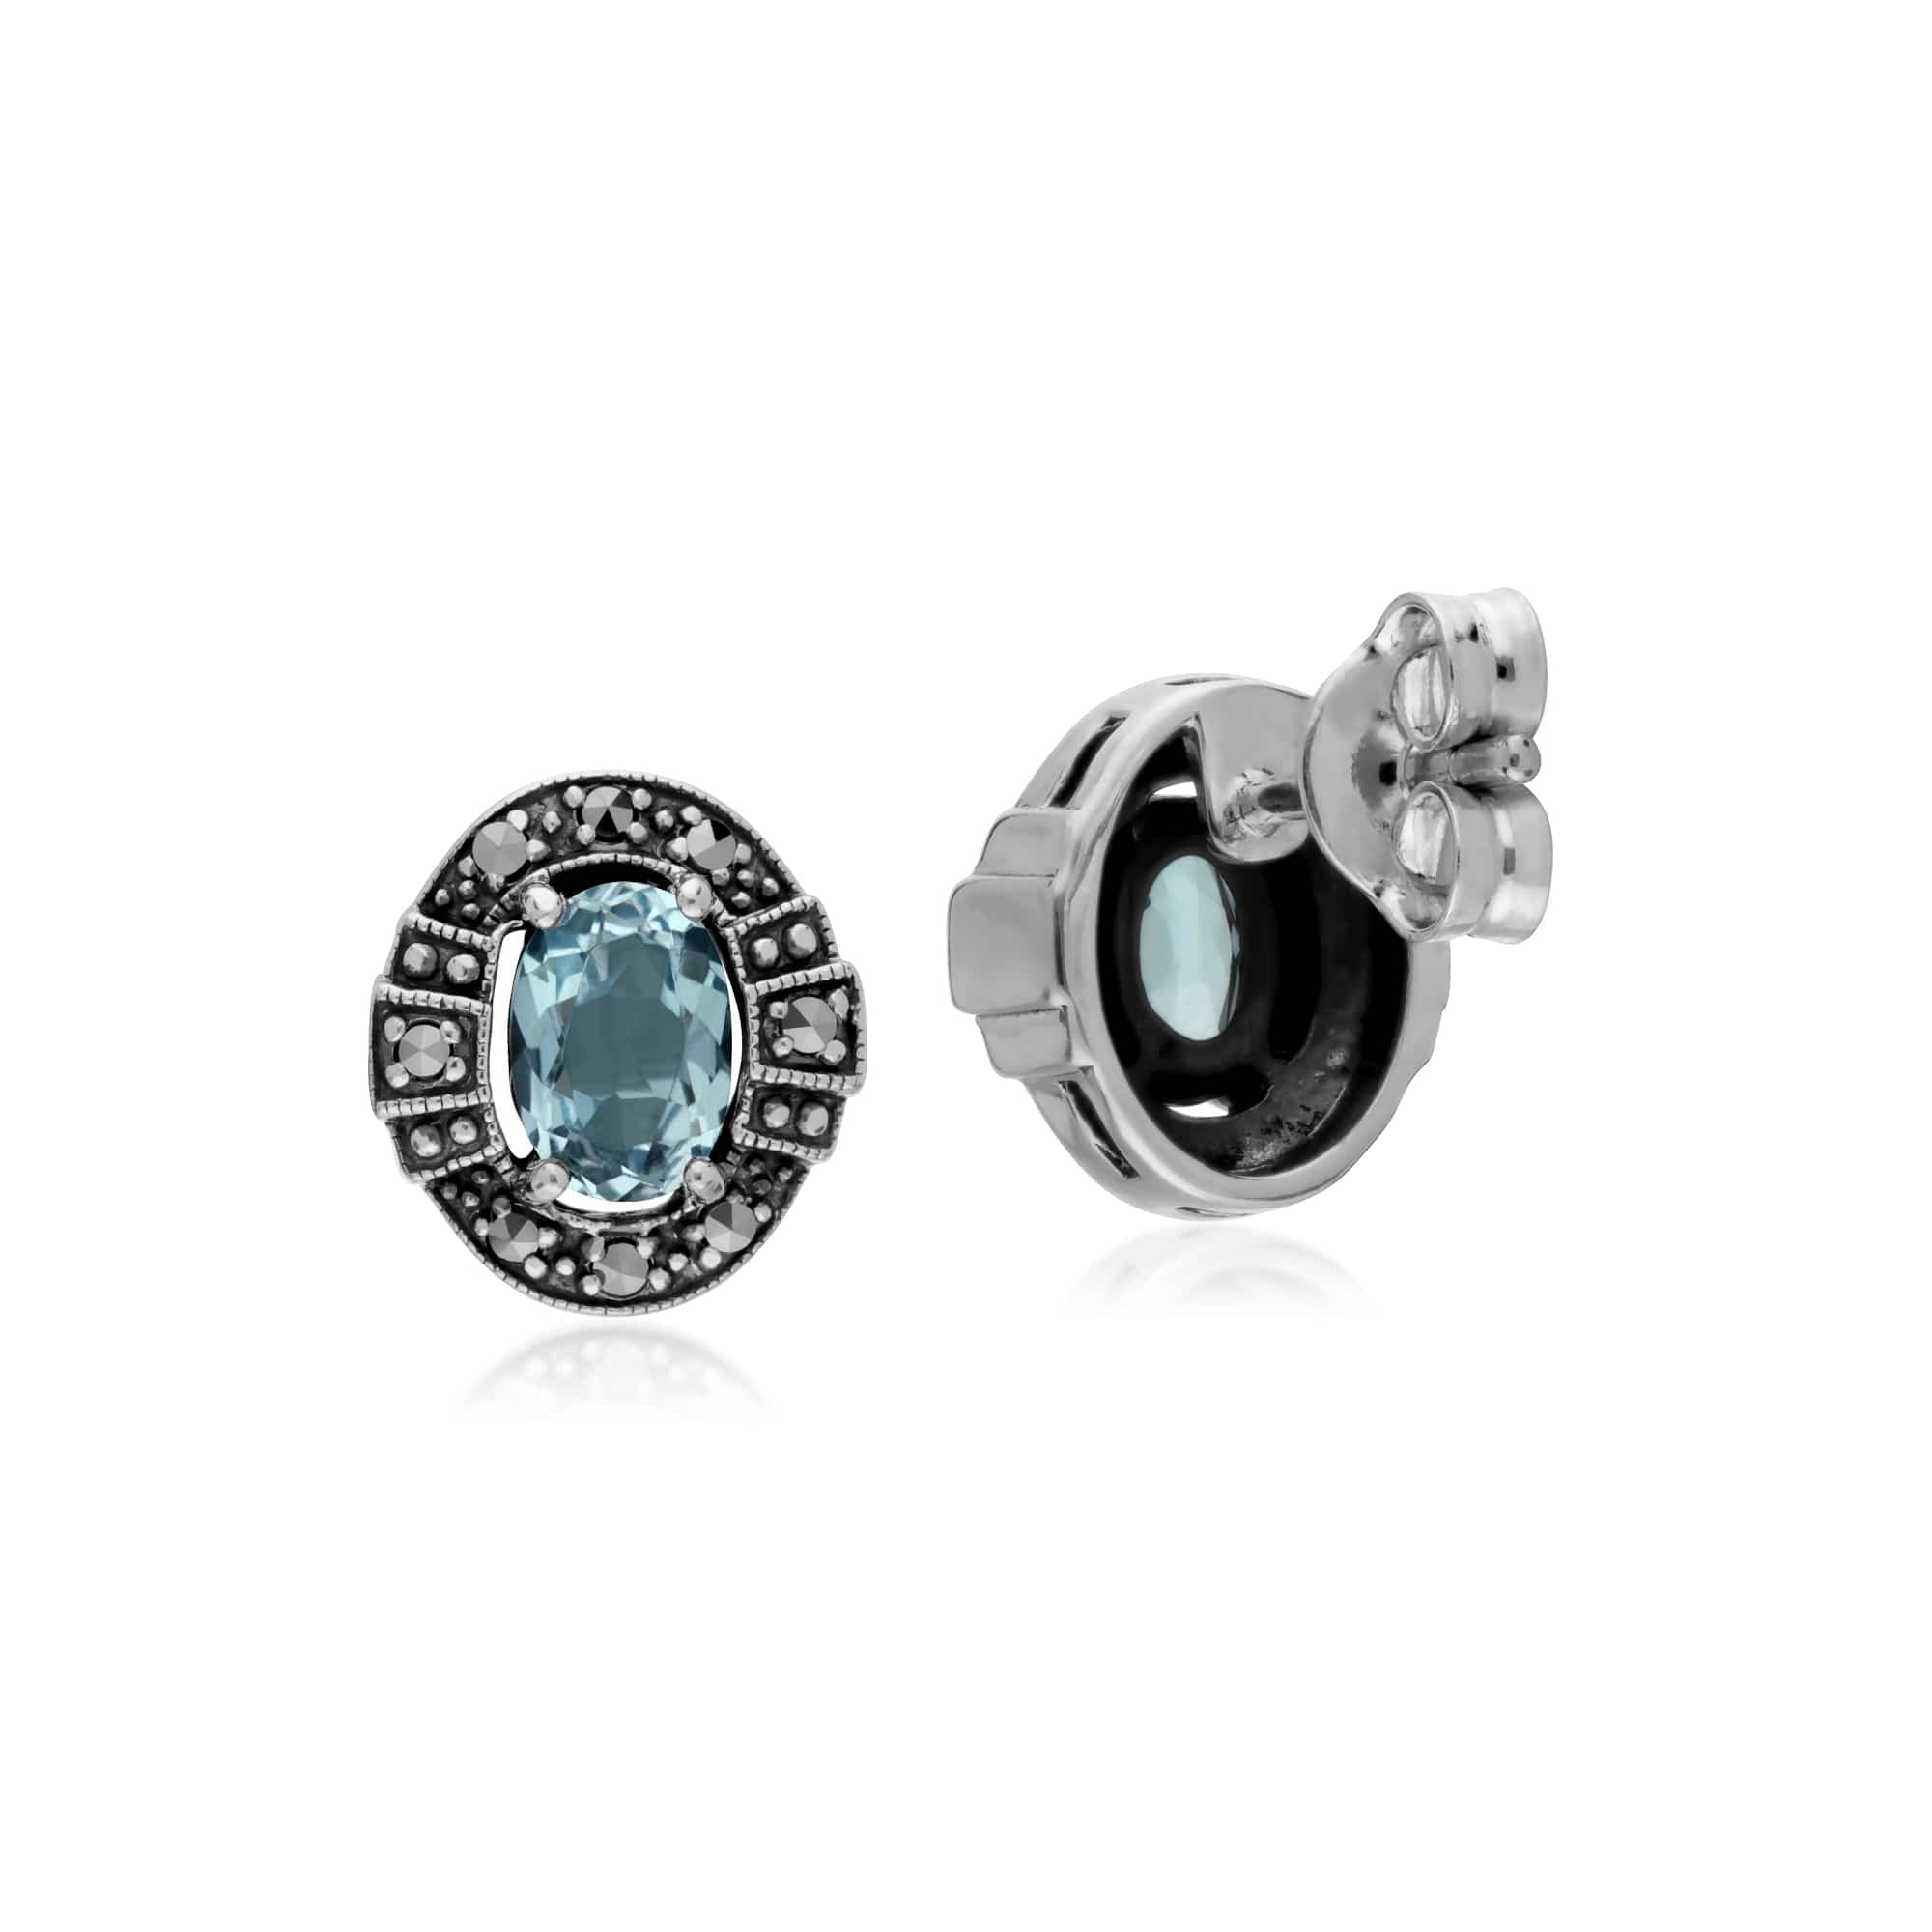 214E873001925 Art Deco Style Oval Blue Topaz & Marcasite Stud Earrings in 925 Sterling Silver 2